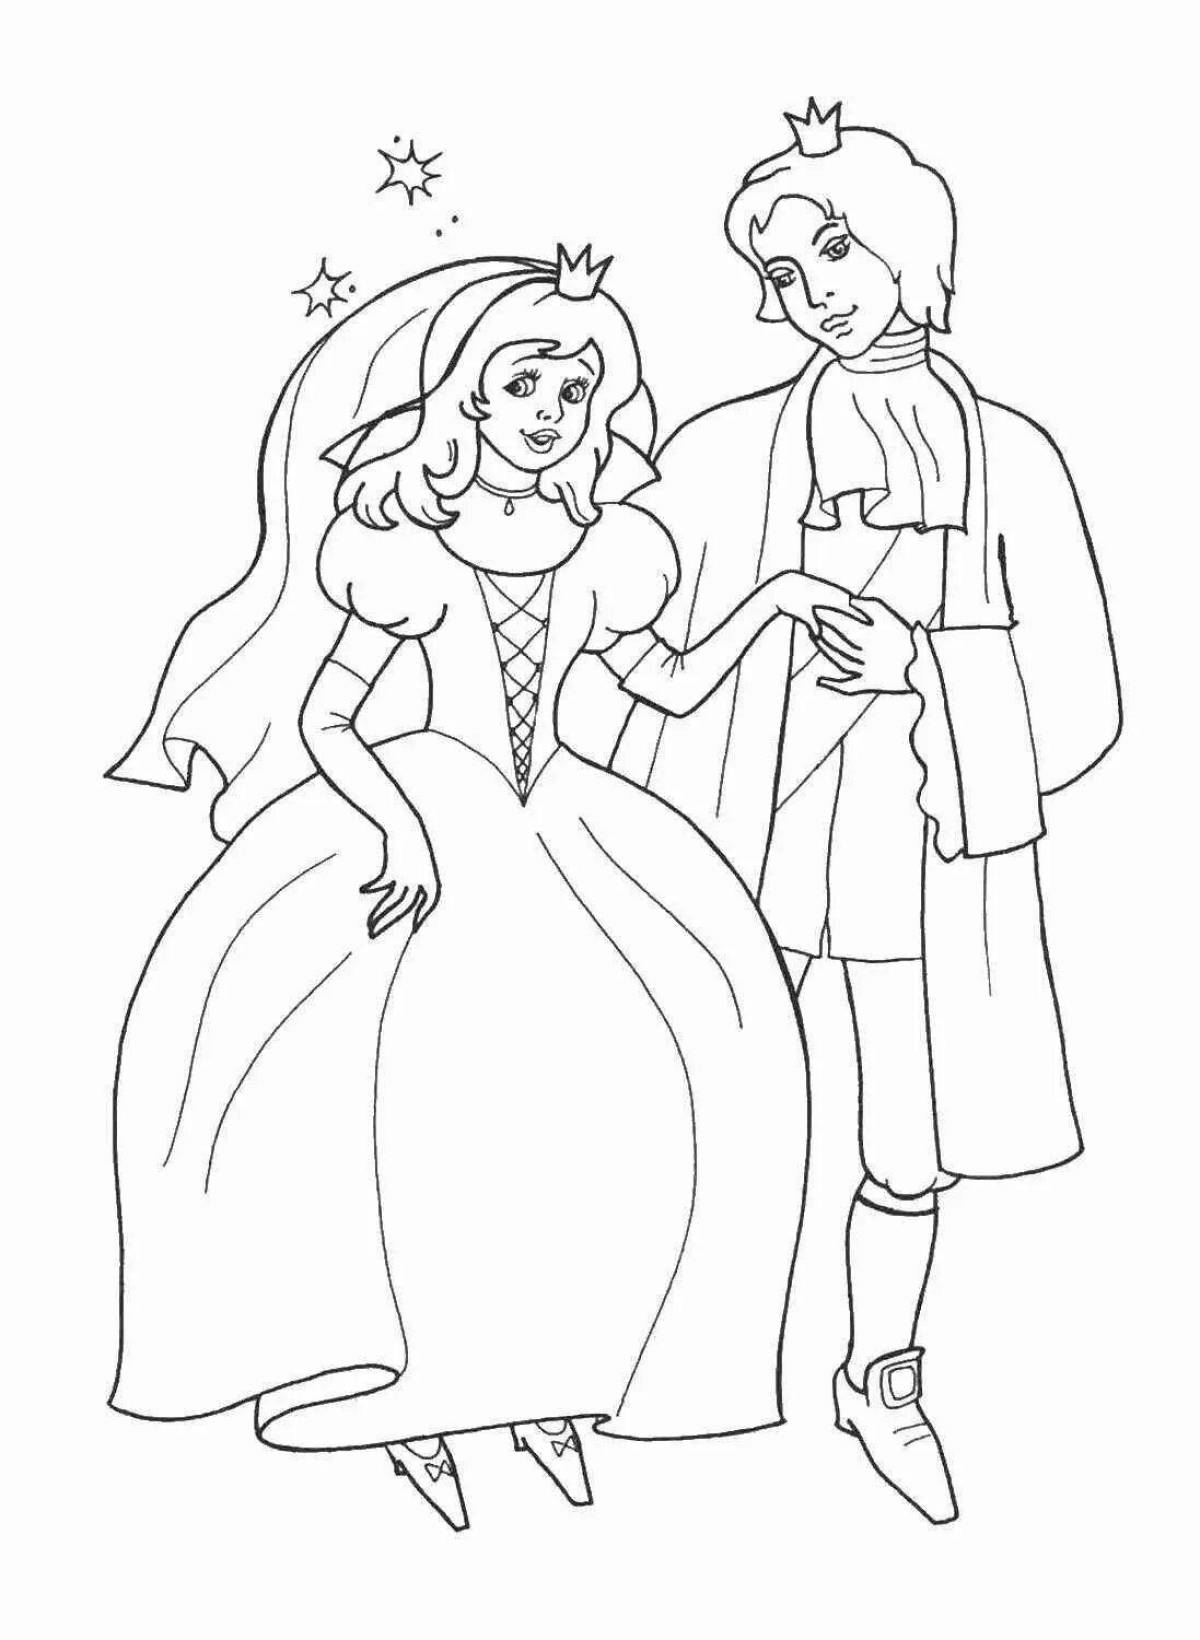 Royal coloring princess and king